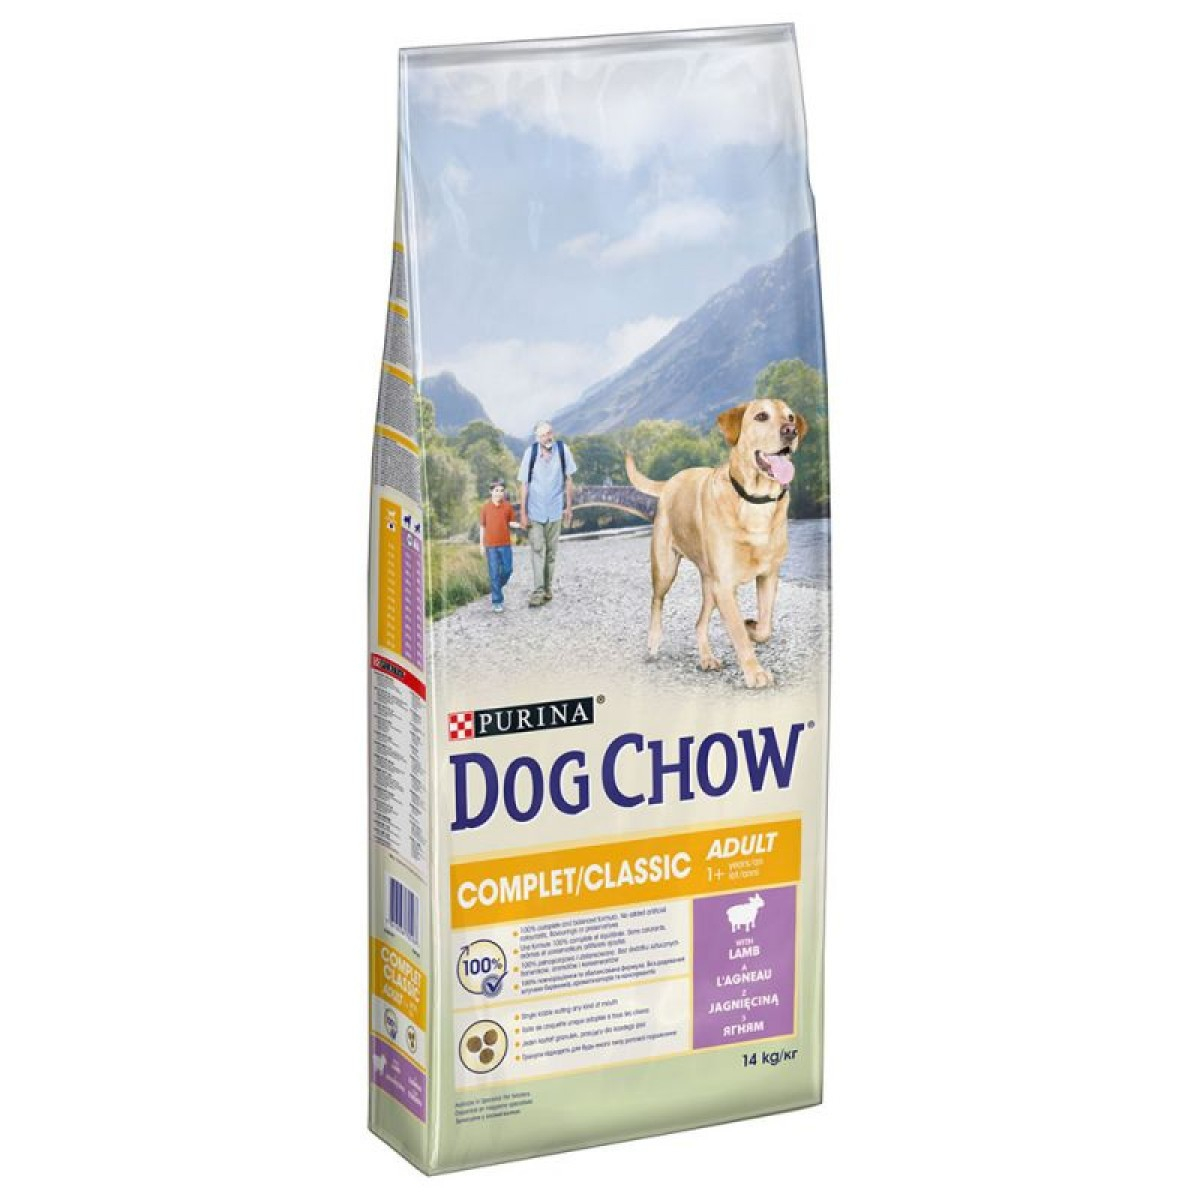 DOG CHOW Completo com Cordeiro para cães